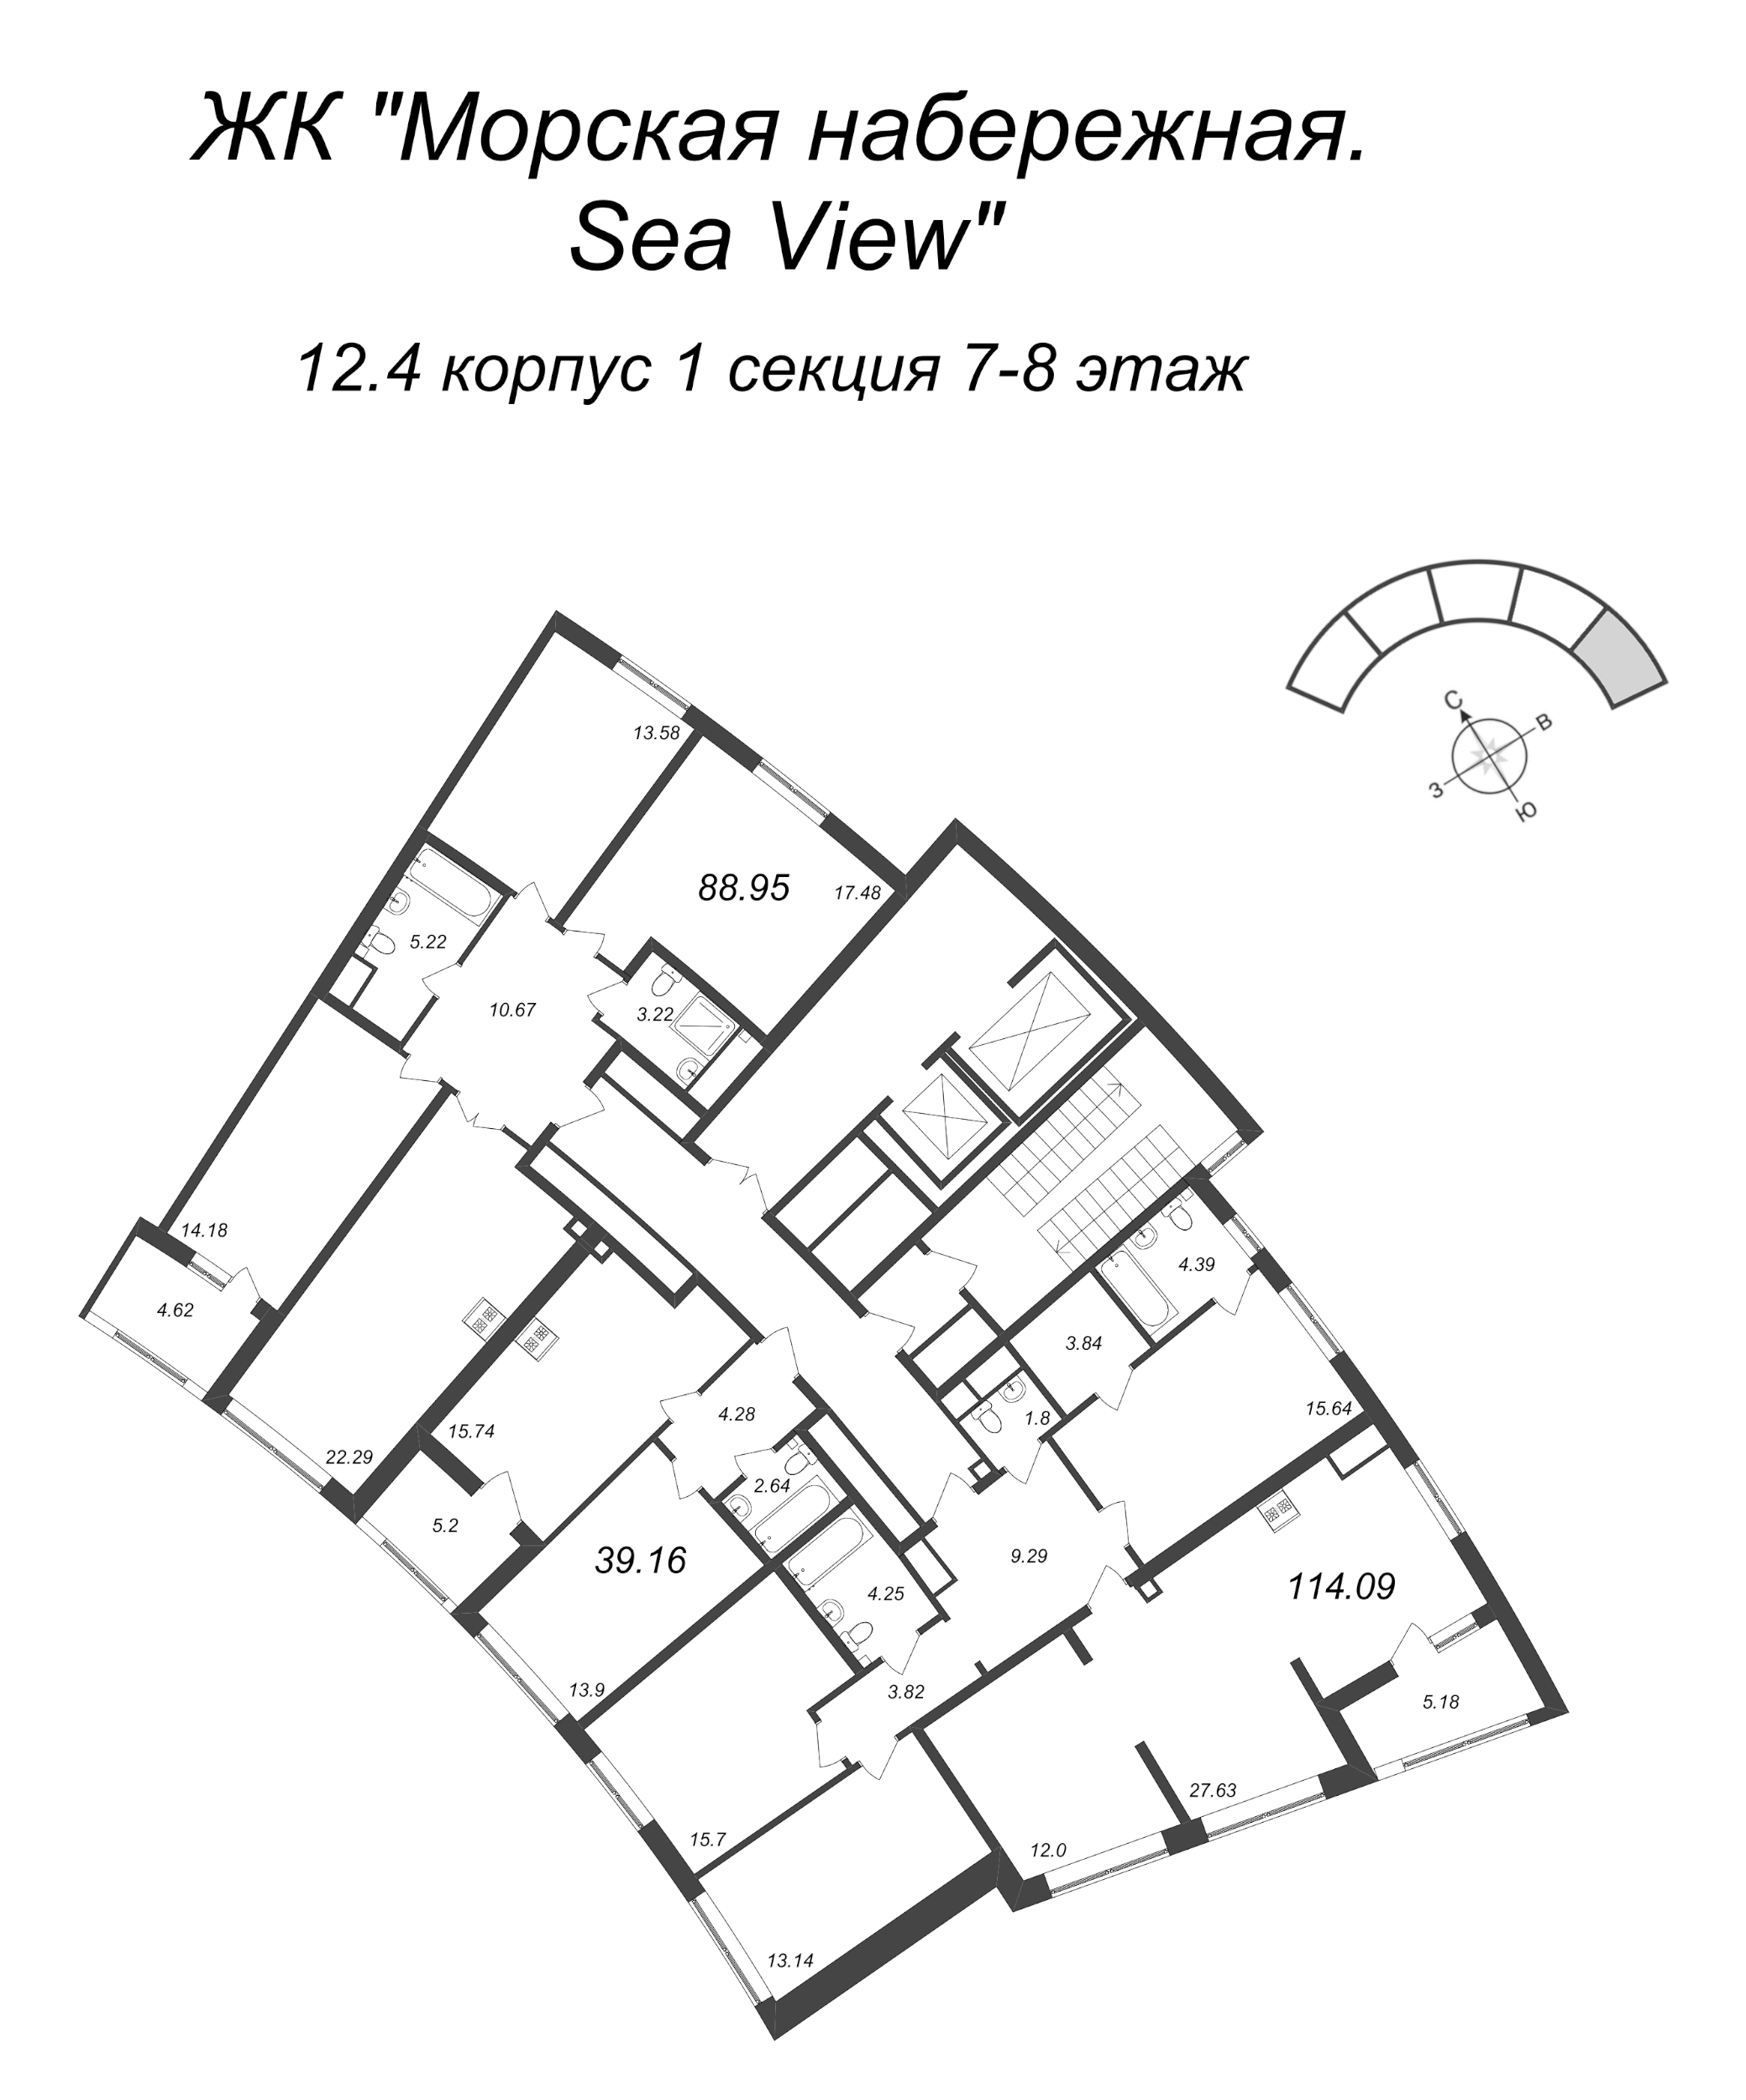 5-комнатная (Евро) квартира, 114.09 м² в ЖК "Морская набережная. SeaView" - планировка этажа